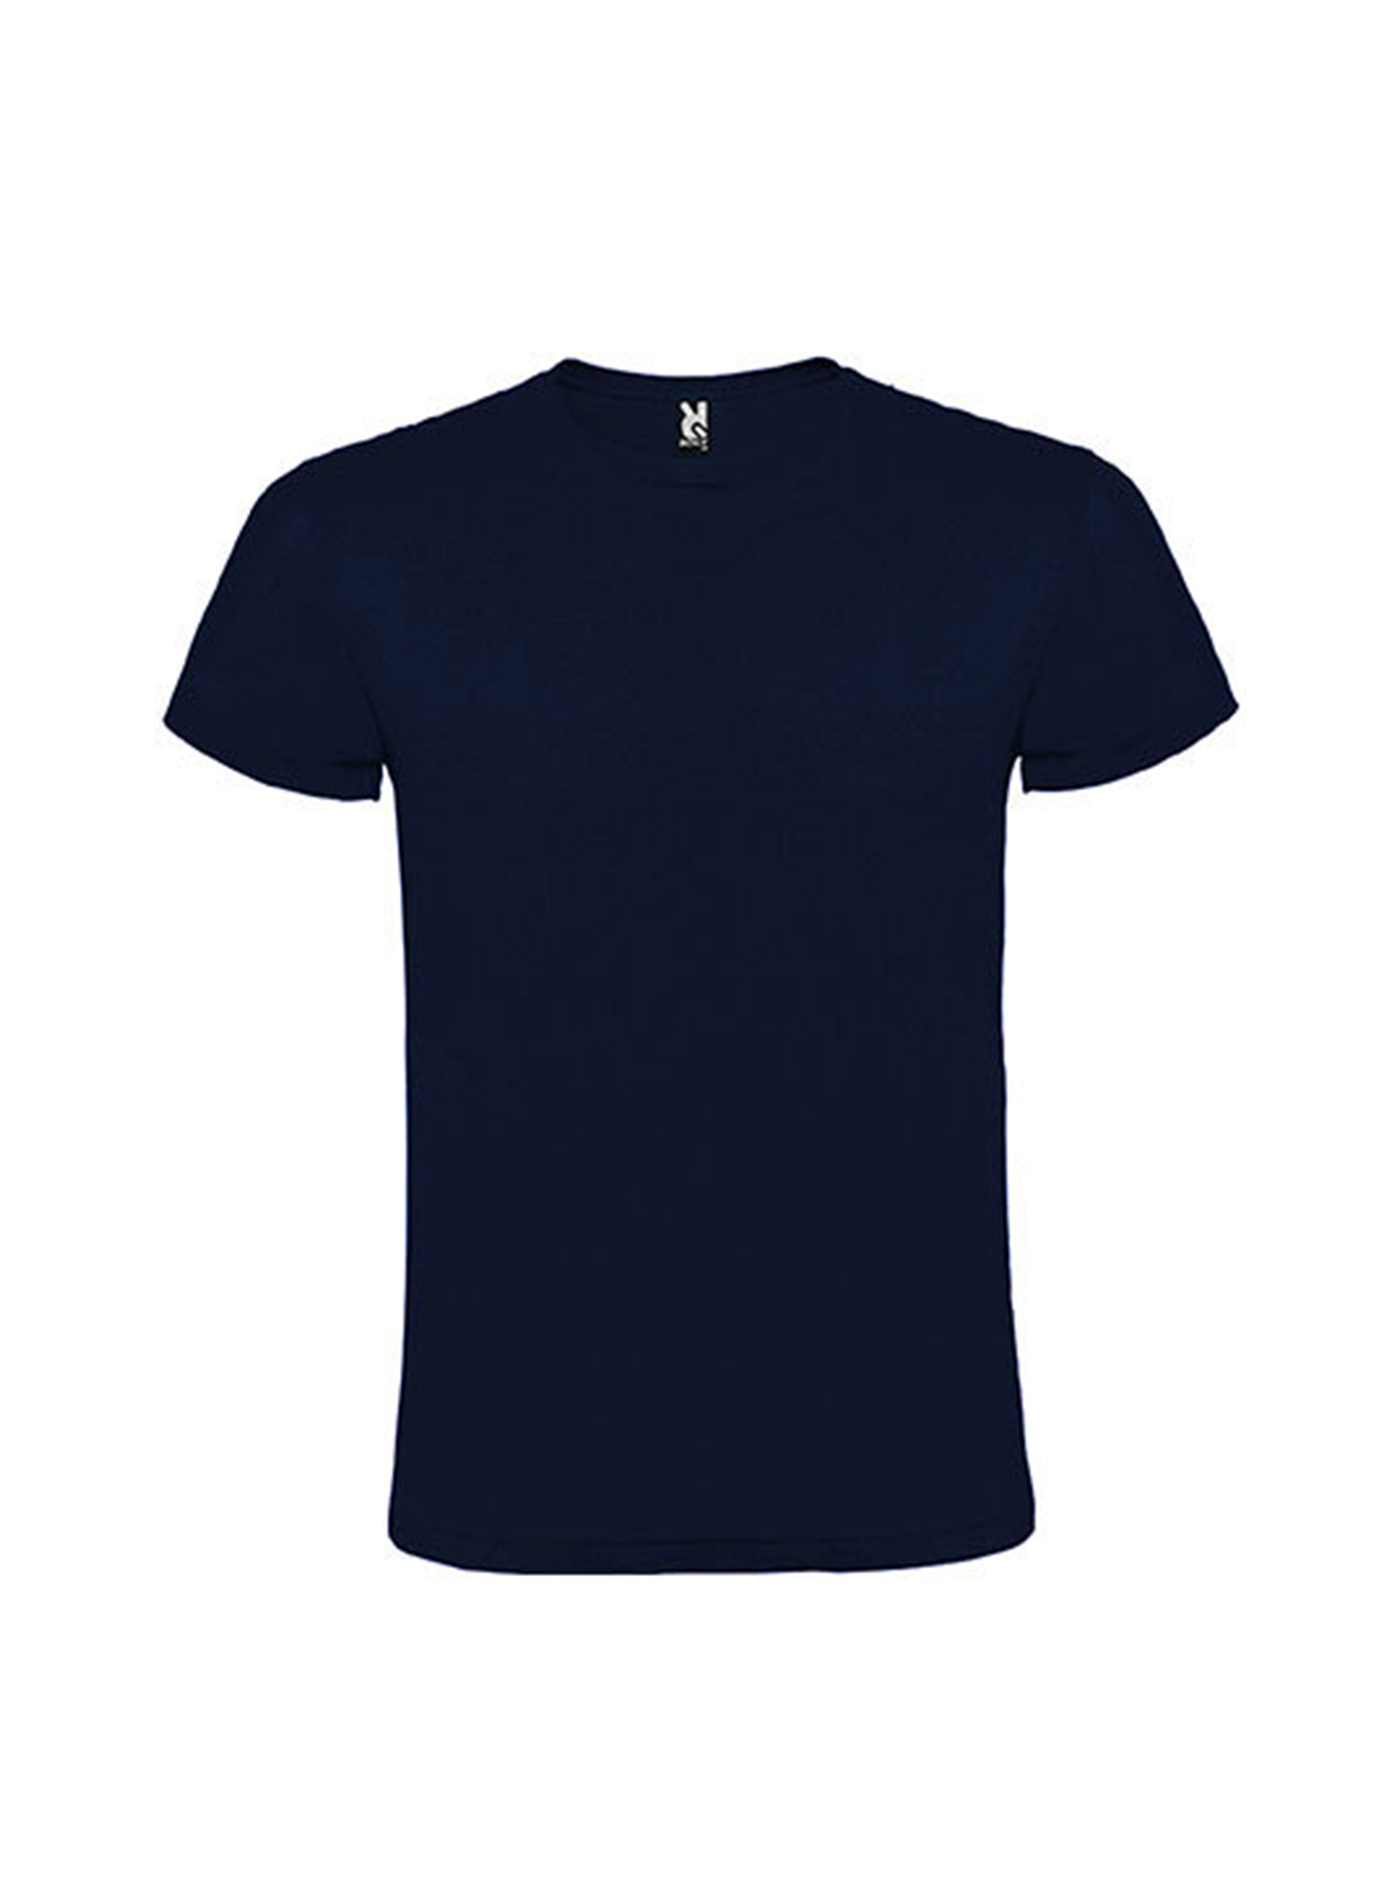 Pánské tričko Roly Atomic - Námořnická modrá M